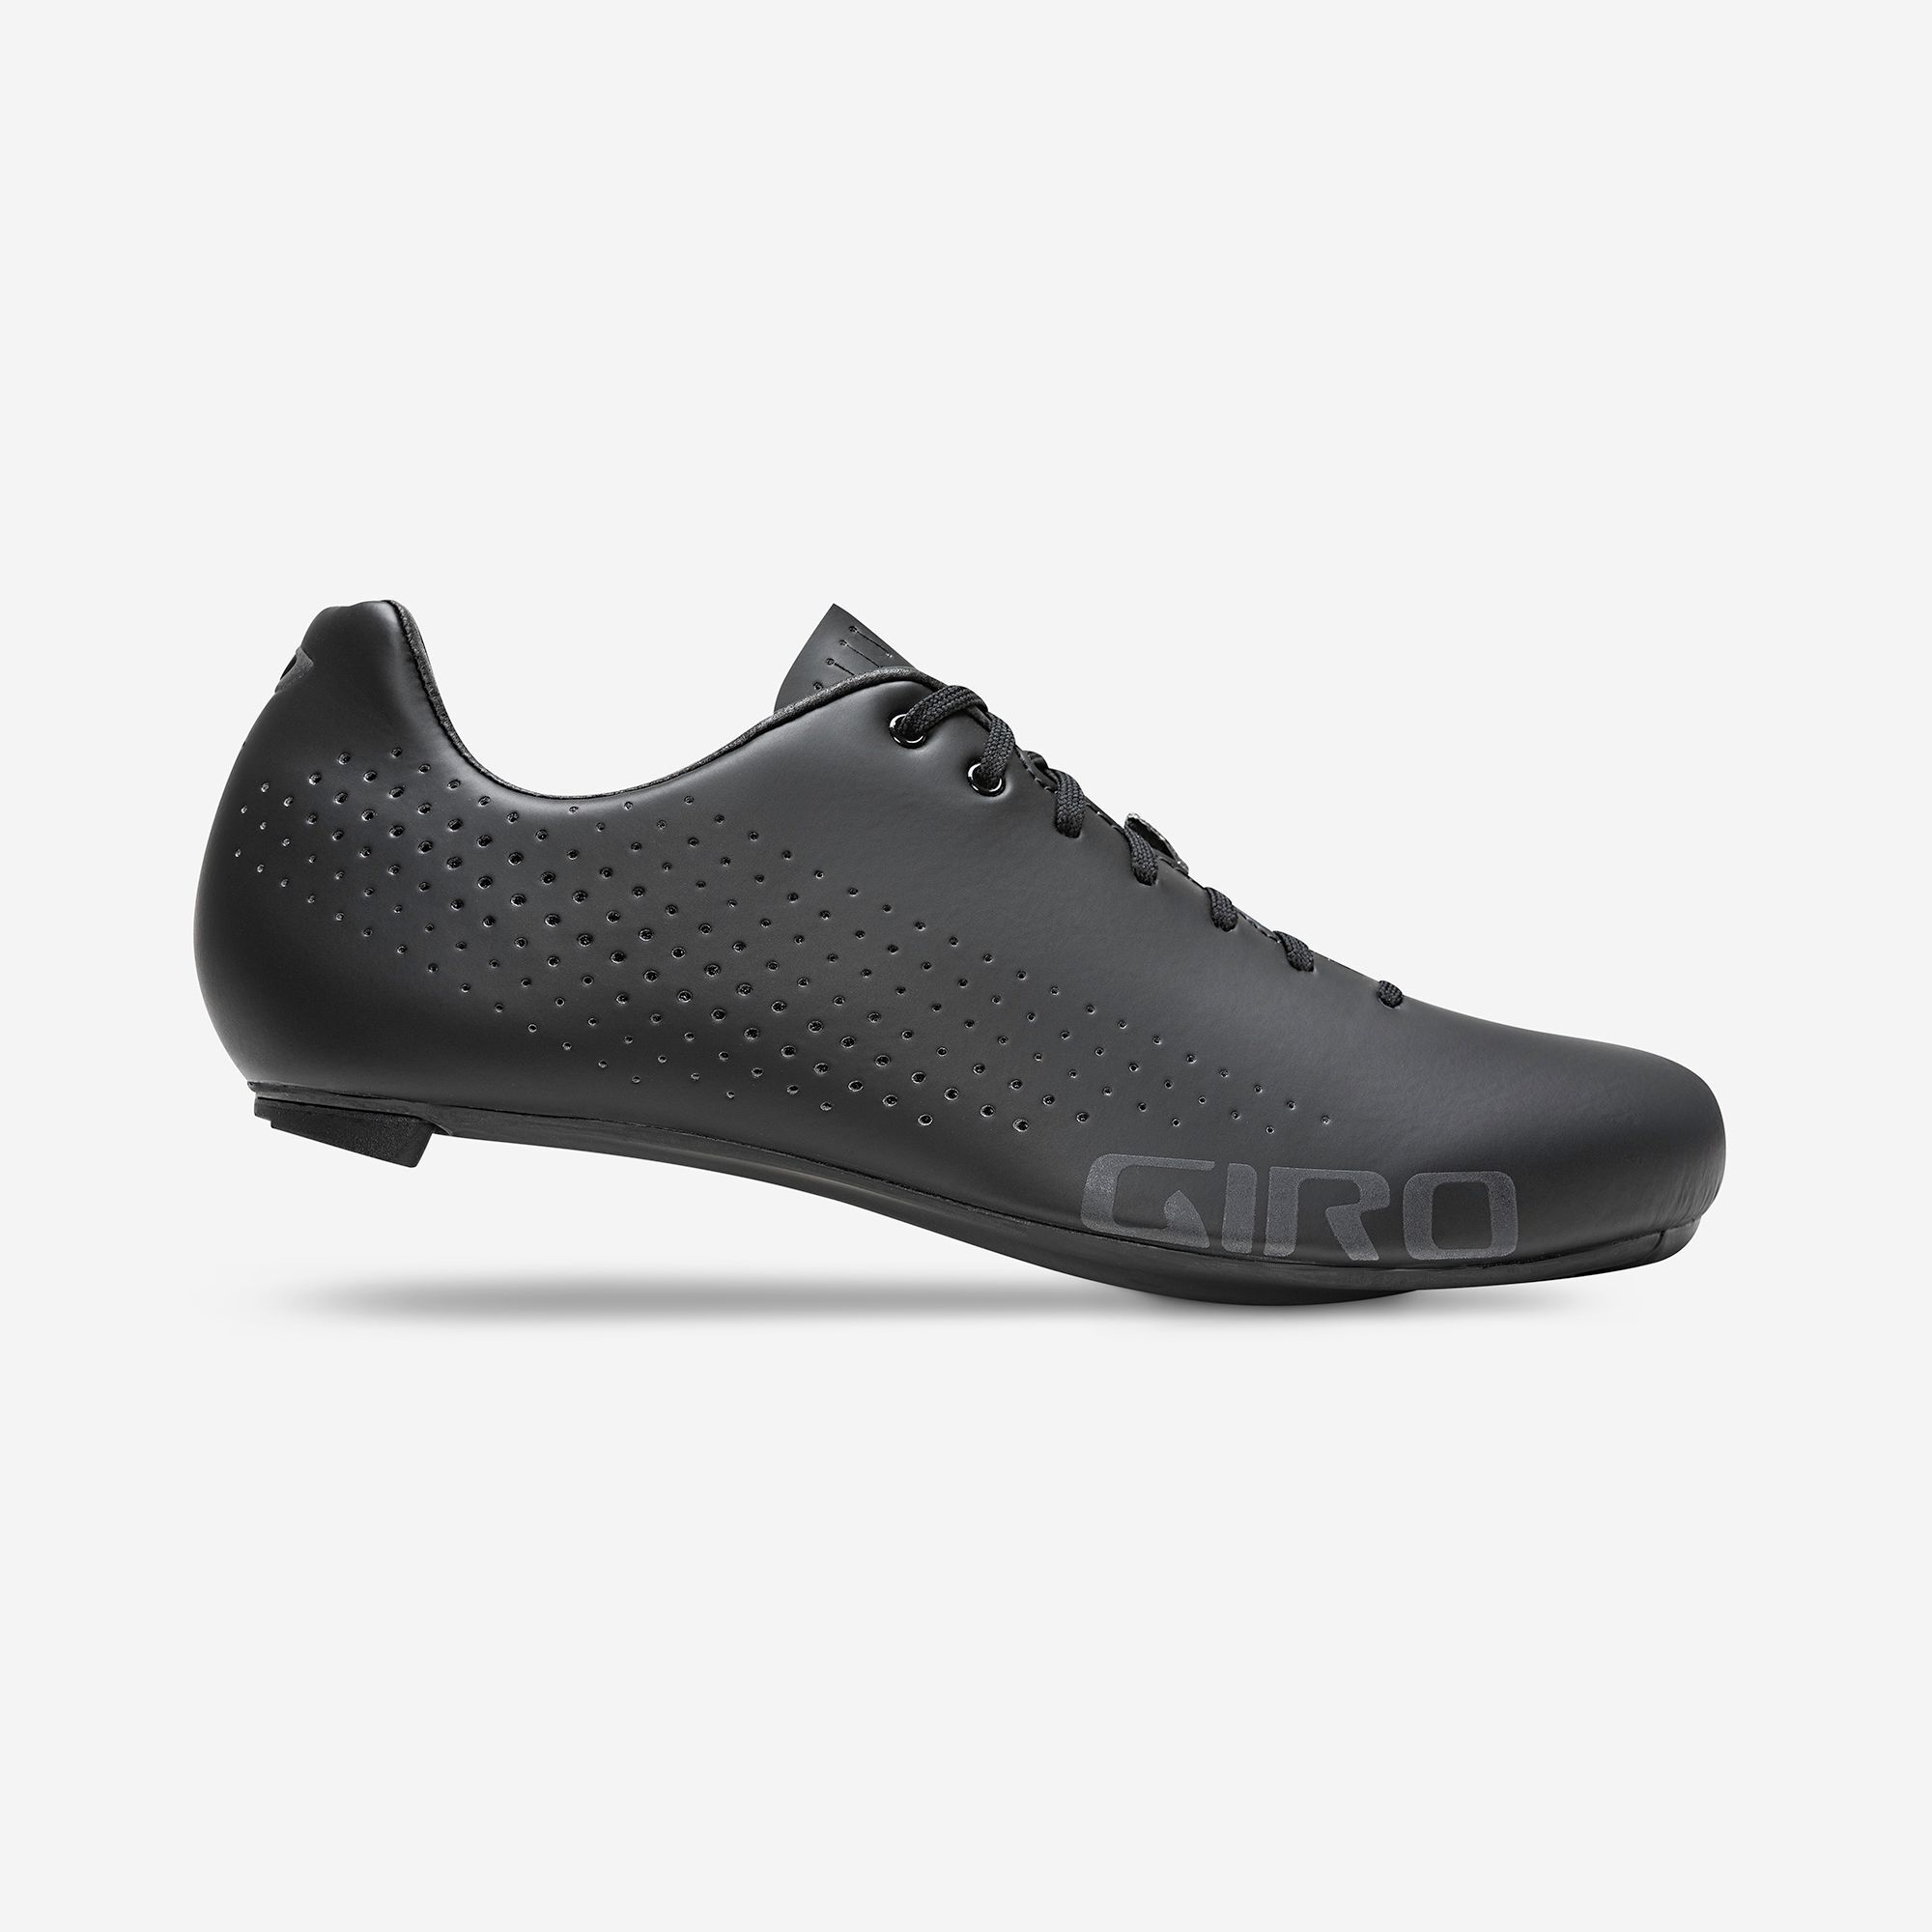 Giro Empire HV Road Biking Cycling Shoe Black 